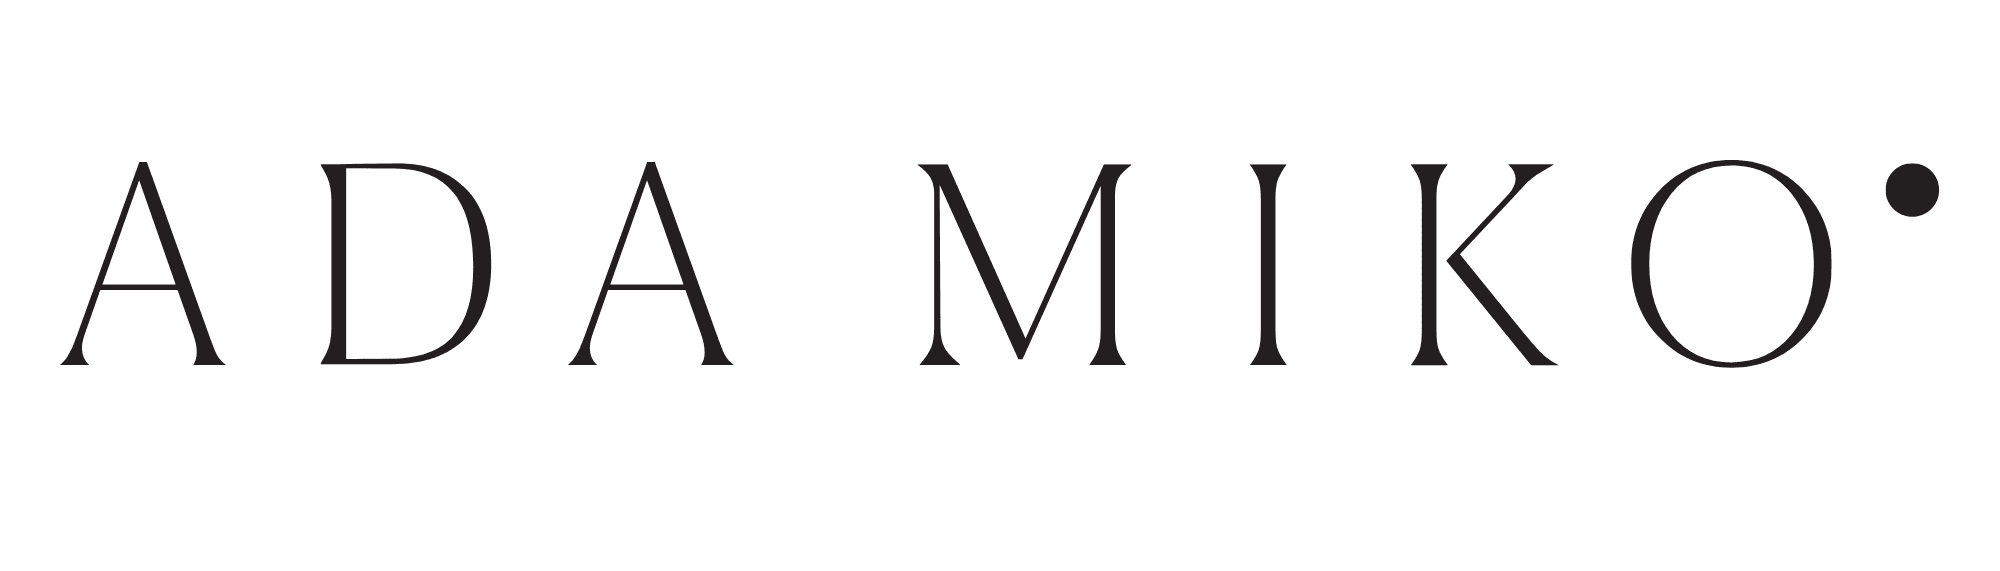 ada miko logo 1 (1)